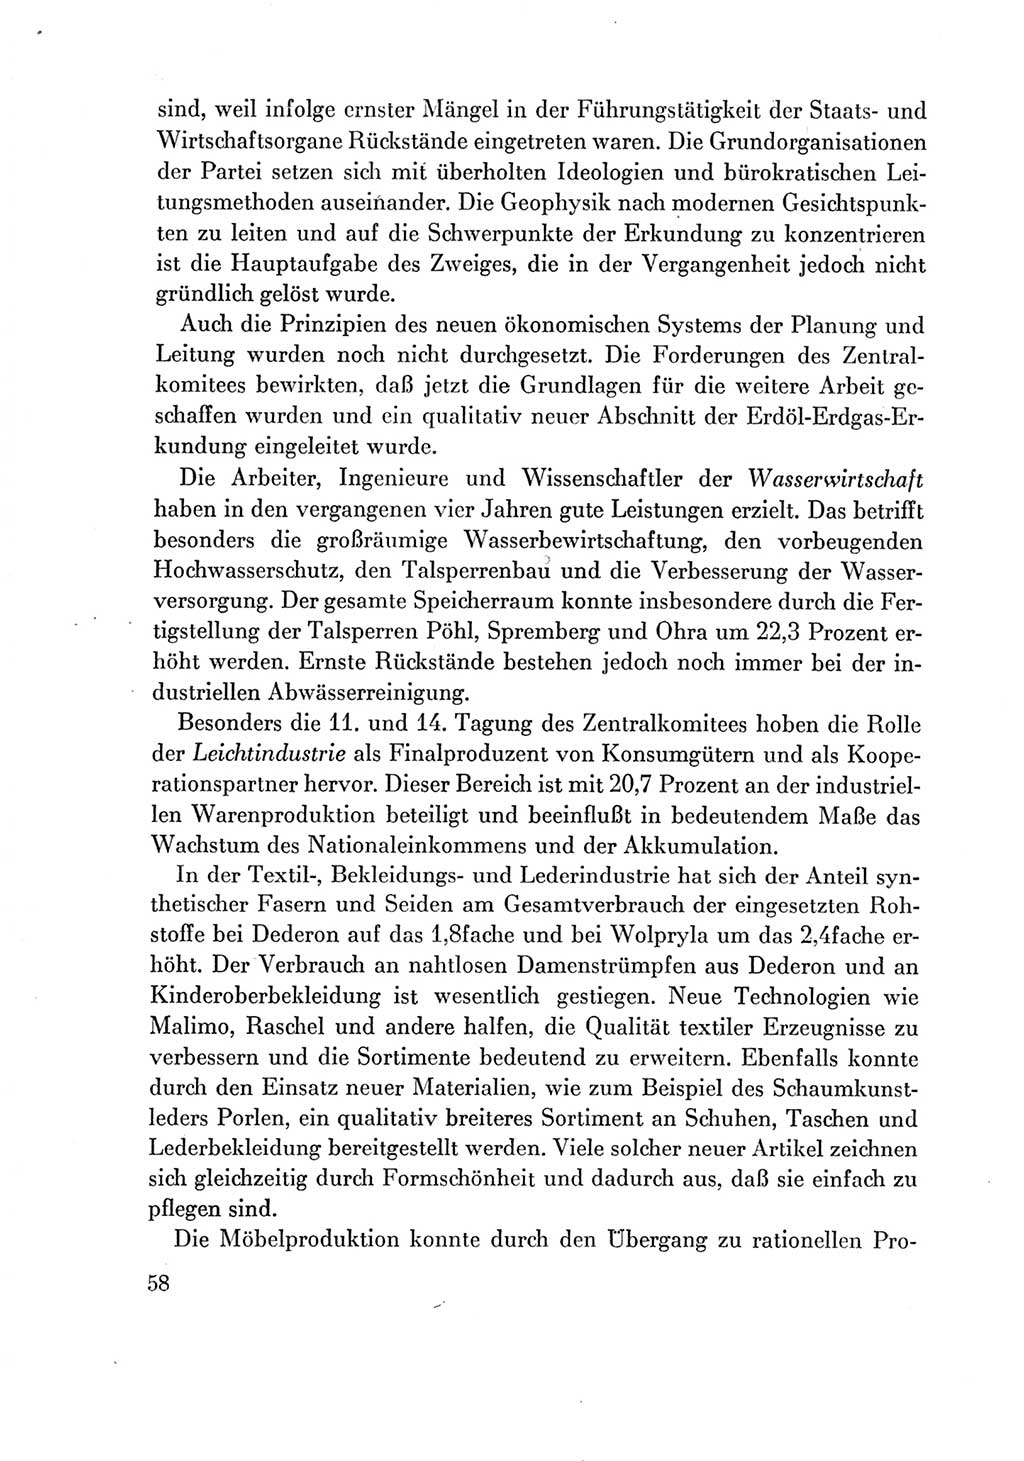 Protokoll der Verhandlungen des Ⅶ. Parteitages der Sozialistischen Einheitspartei Deutschlands (SED) [Deutsche Demokratische Republik (DDR)] 1967, Band Ⅳ, Seite 58 (Prot. Verh. Ⅶ. PT SED DDR 1967, Bd. Ⅳ, S. 58)